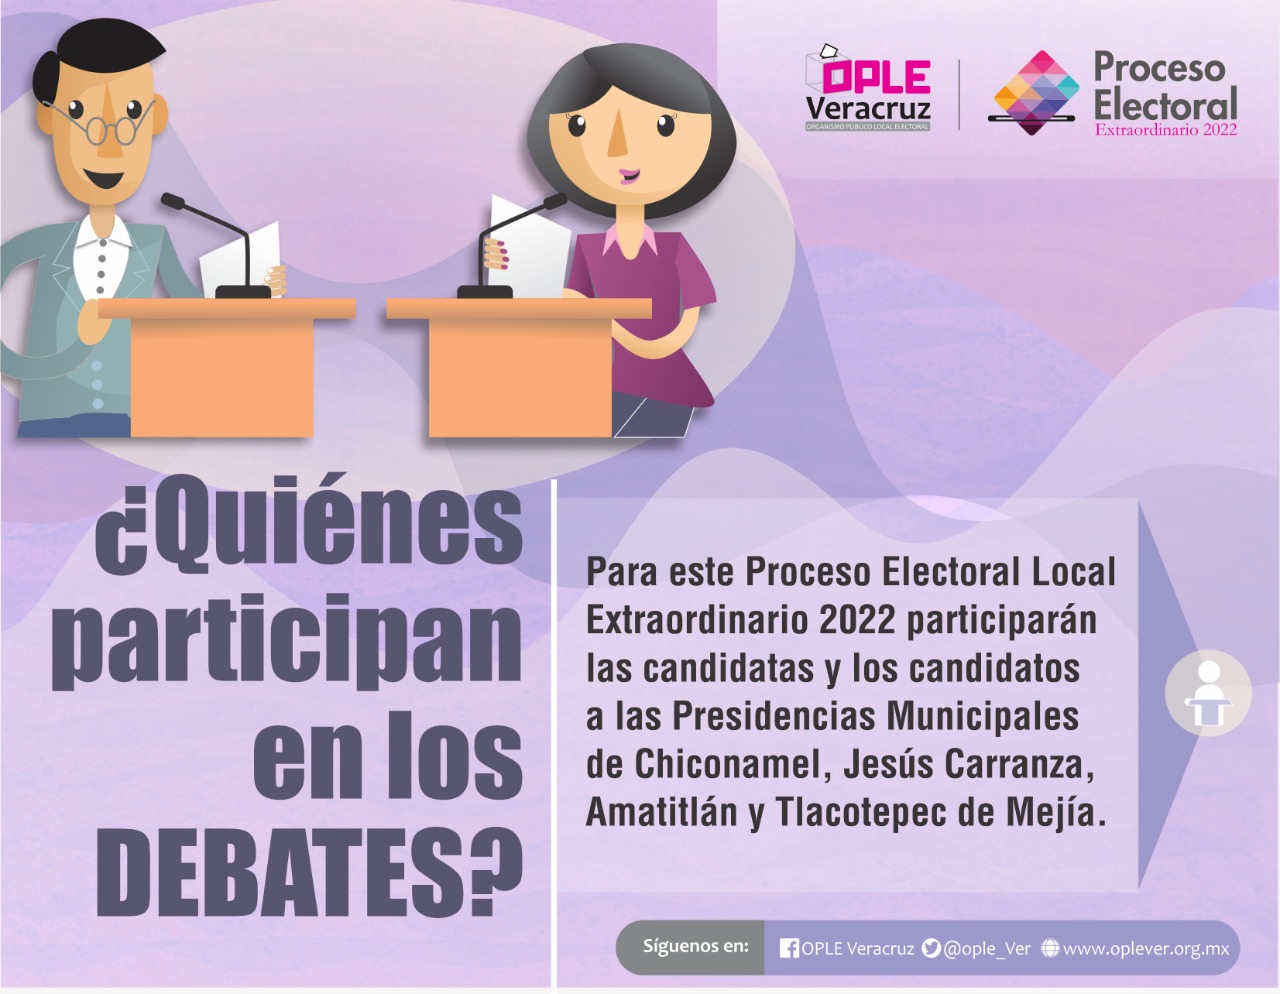 OPLE Veracruz invita a participar en los debates a las candidatas y candidatos a las Presidencias Municipales donde se celebrarán elecciones extraordinarias